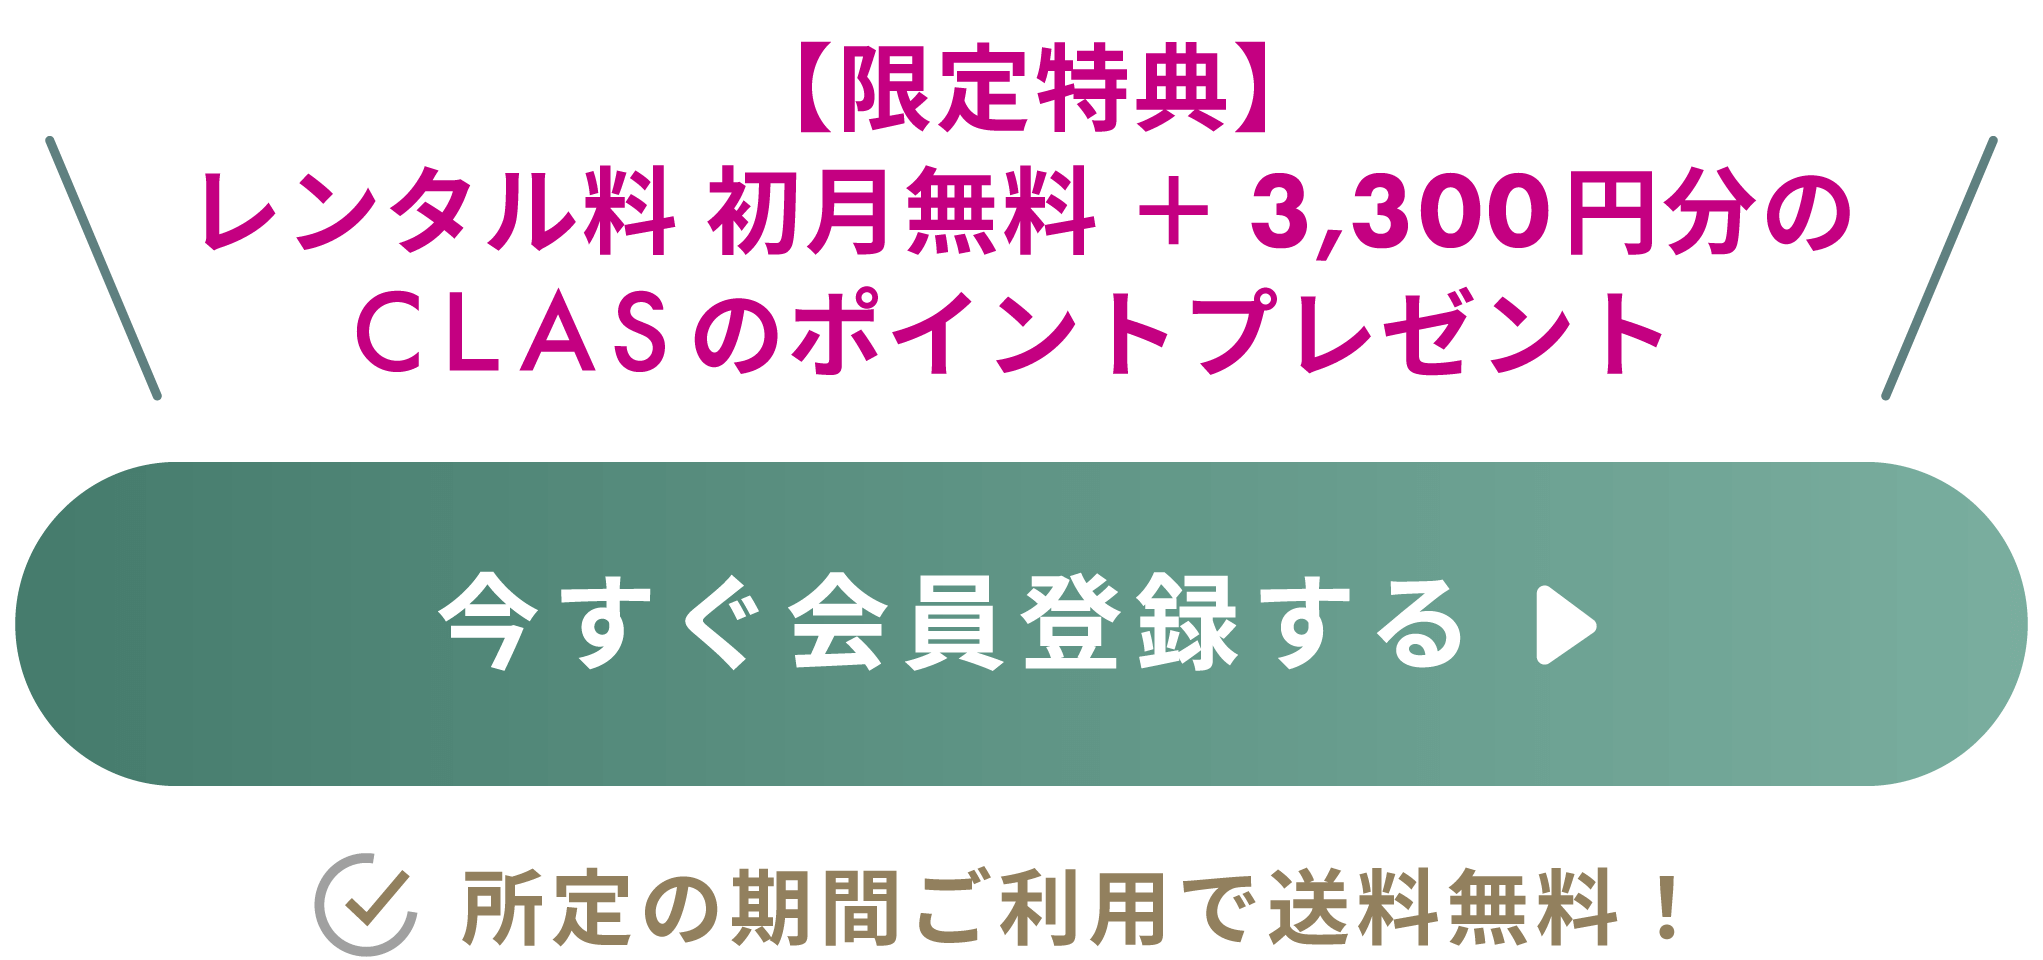 【限定特典】レンタル料 初月無料＋ CLASのポイント3,300円分